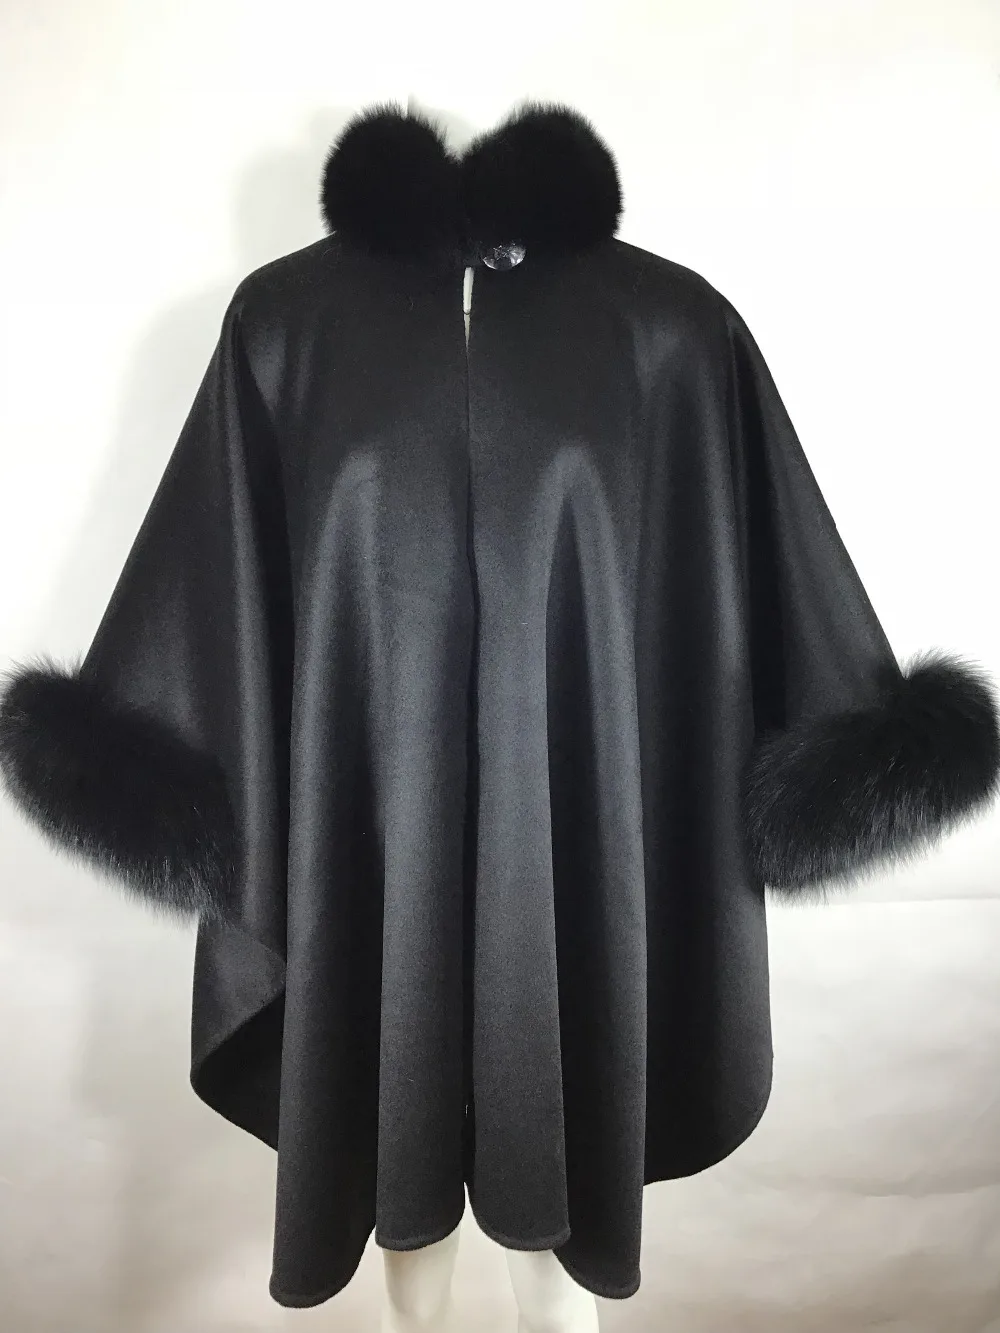 MLHXFUR, настоящее кашемировое пальто из пашмины, шали из пашмины, шерстяной шарф, воротник из лисьего меха, пончо, верхняя одежда